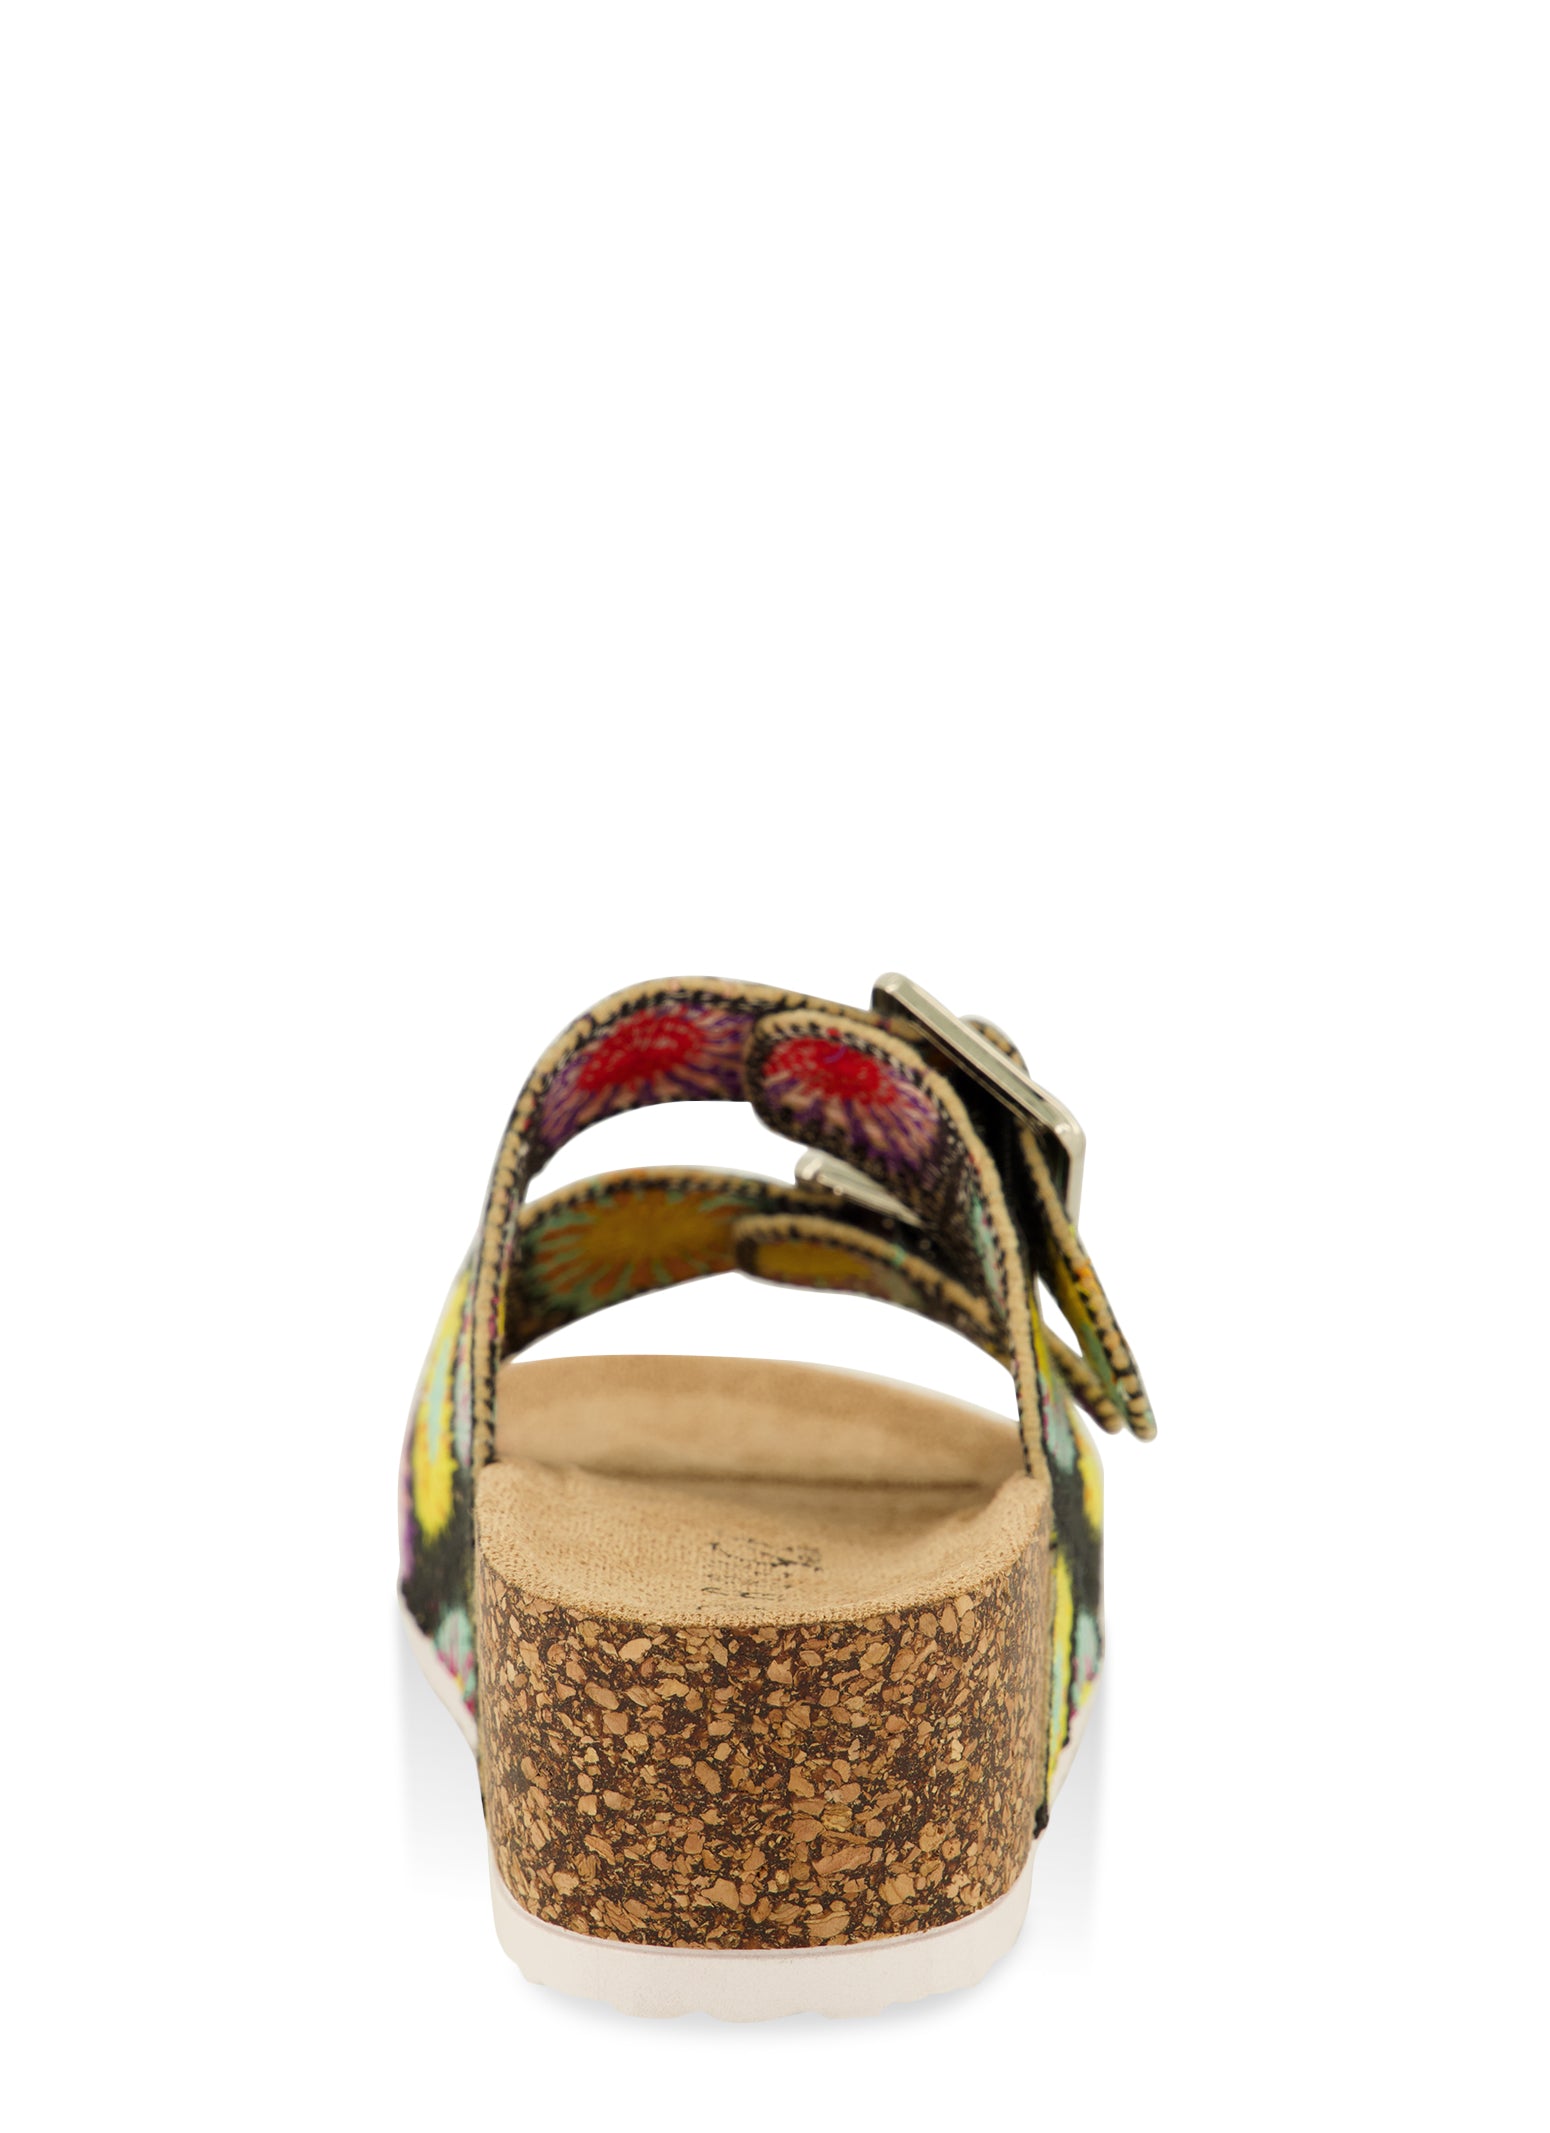 Beach Boho Floral Wedge Sandals Ankle Strap Platform Gladiator Shoes High  Heels | eBay